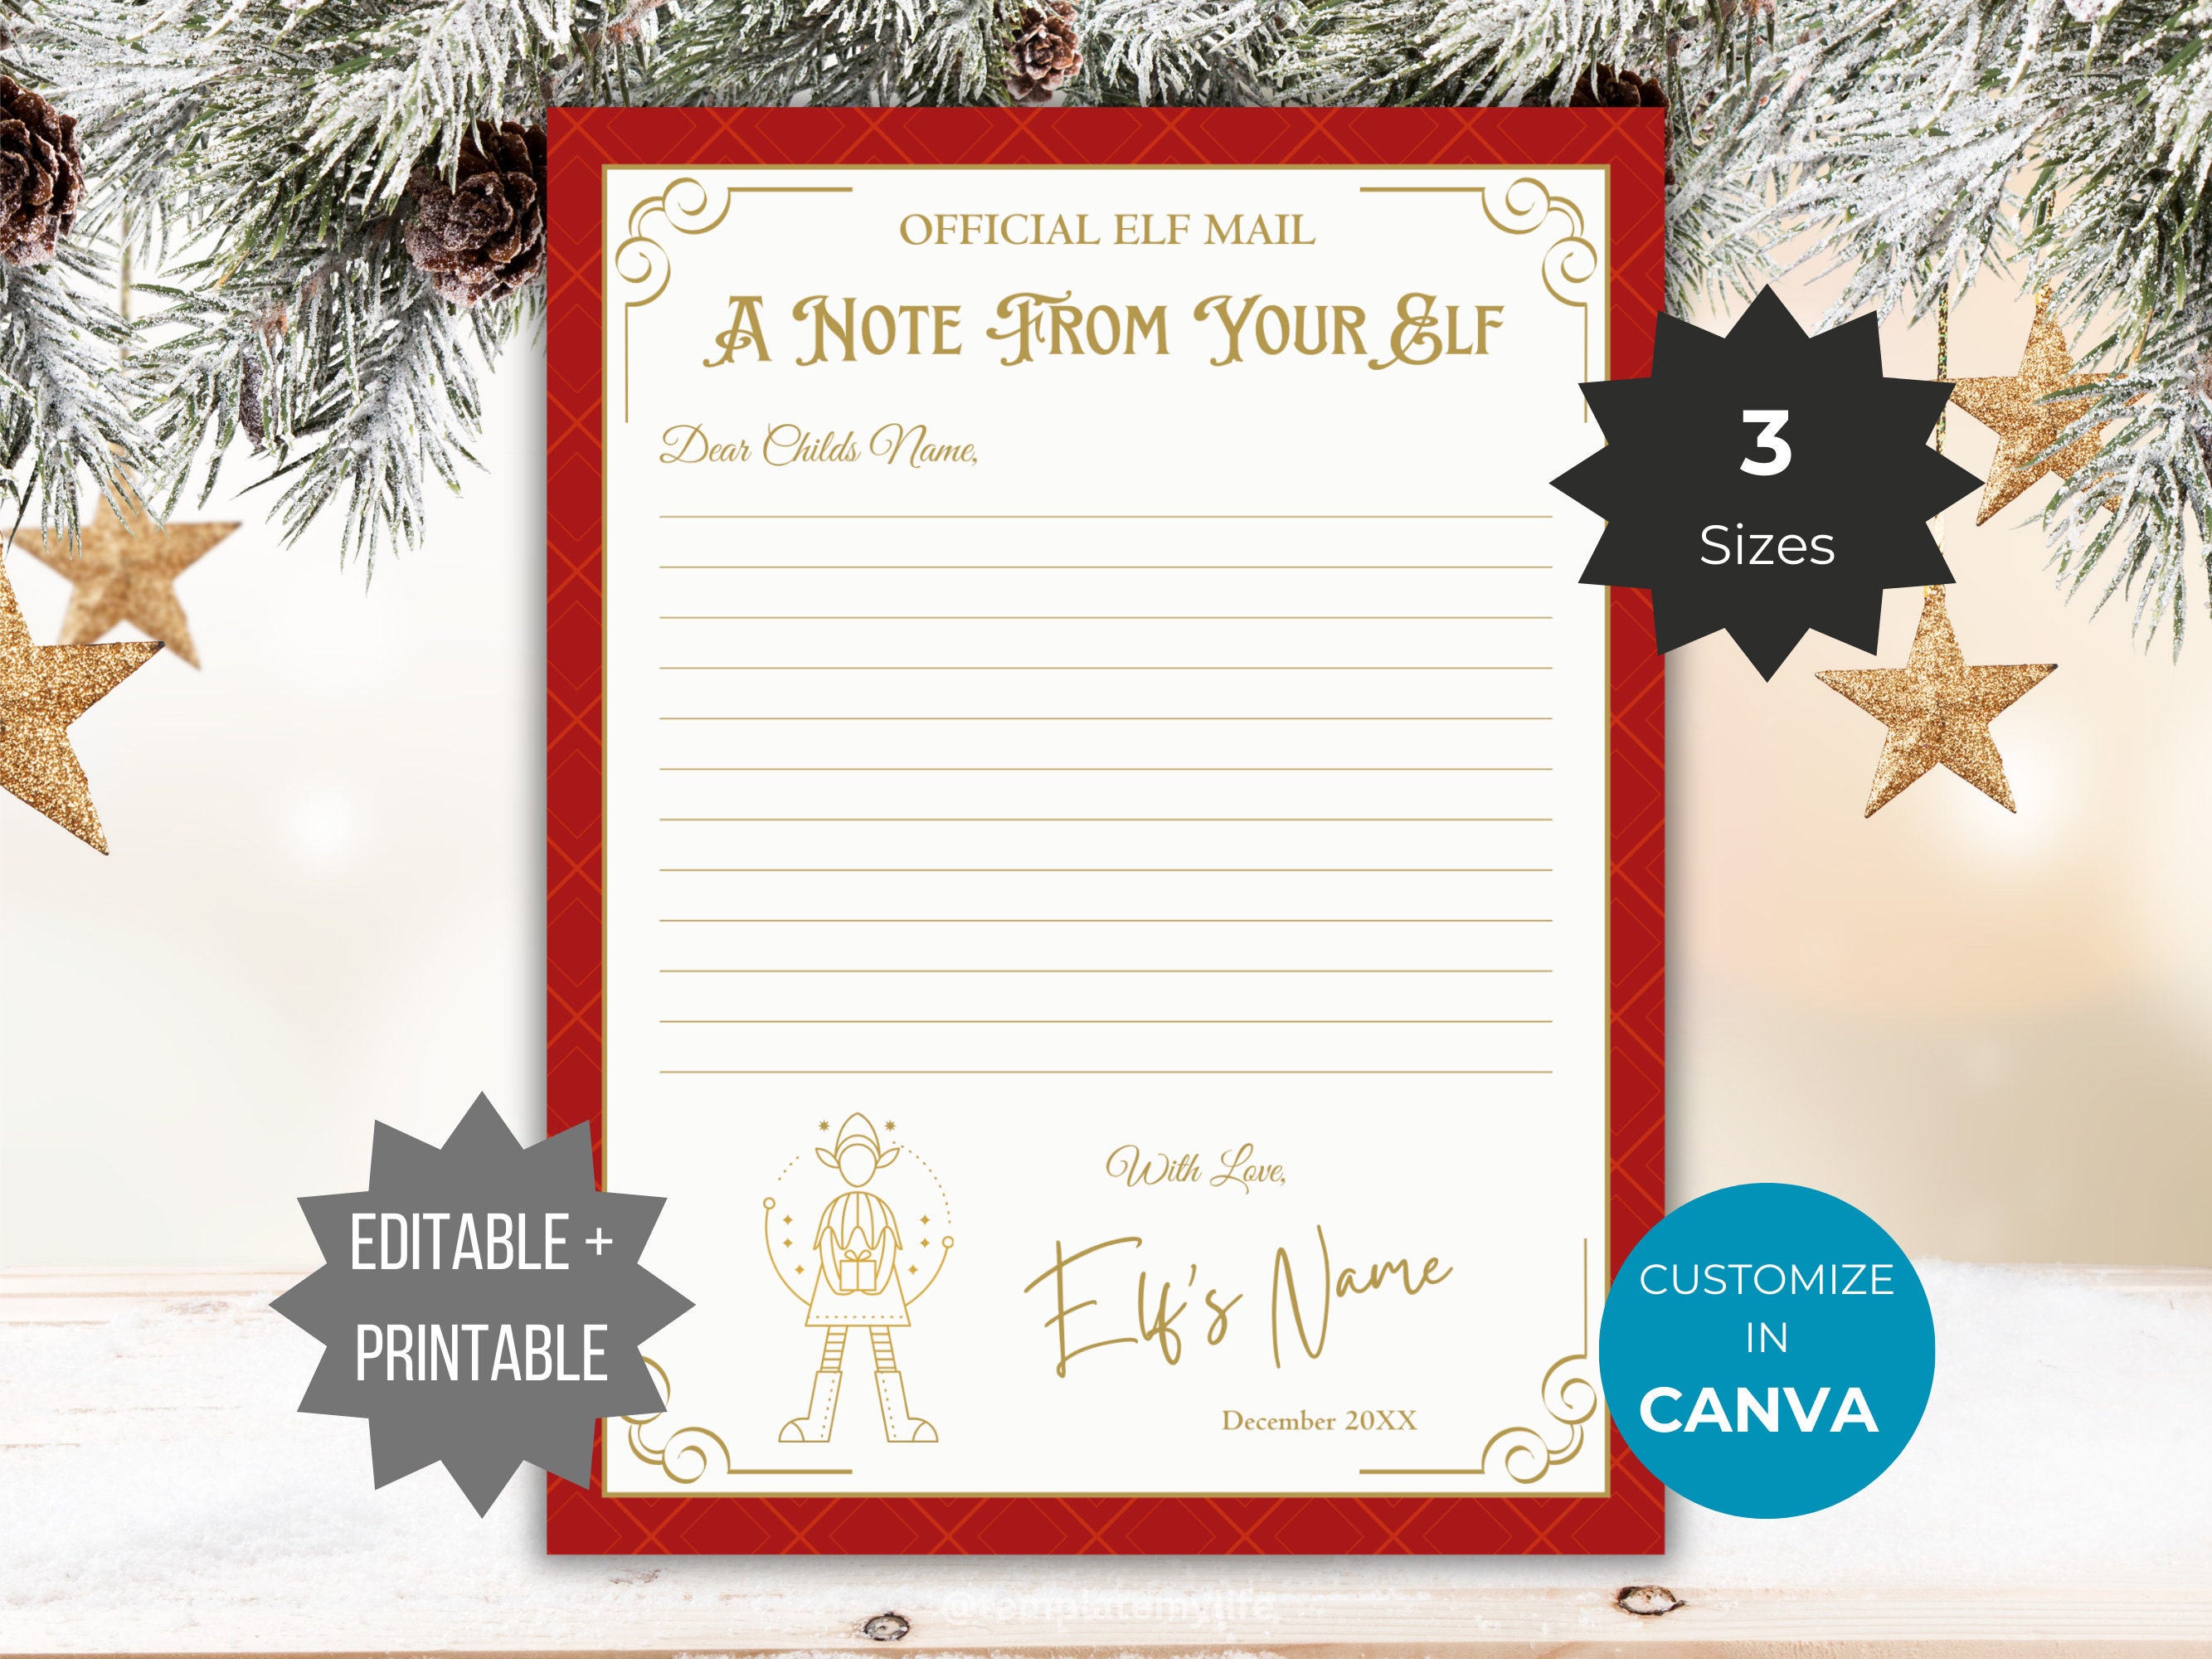 Dear Santa Letter-Writing Kit by Hinkler Books, Other Format